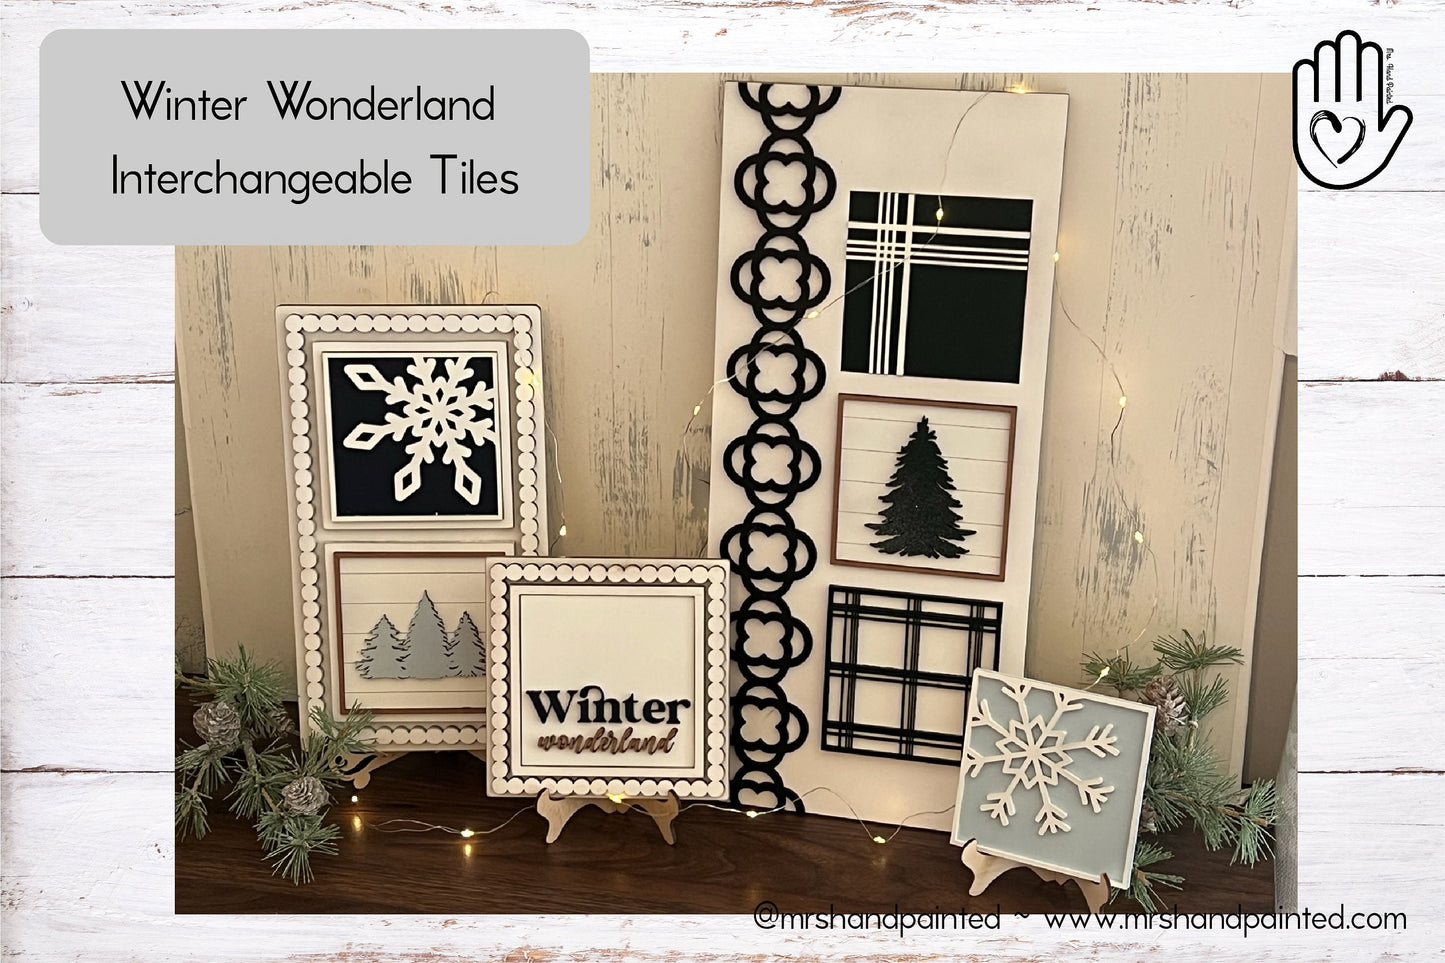 Laser Cut File - Winter Wonderland Ladder Tiles - Interchangeable Signs - Digital Download